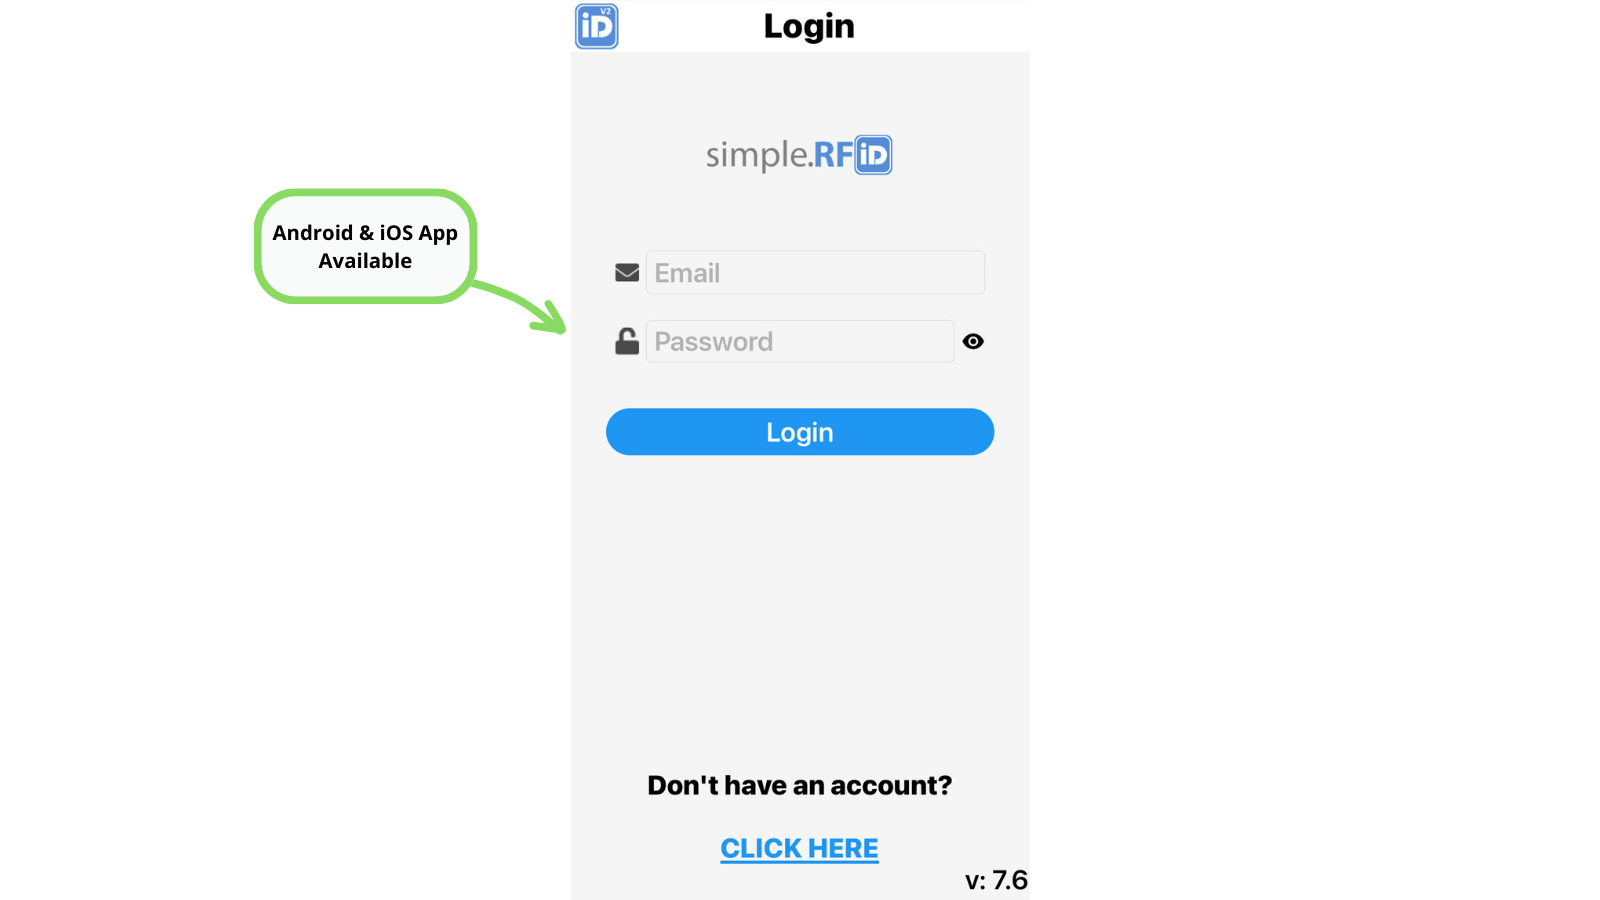 Tela de Login | Faça login com sua conta Simple RFID (entre em contato conosco)